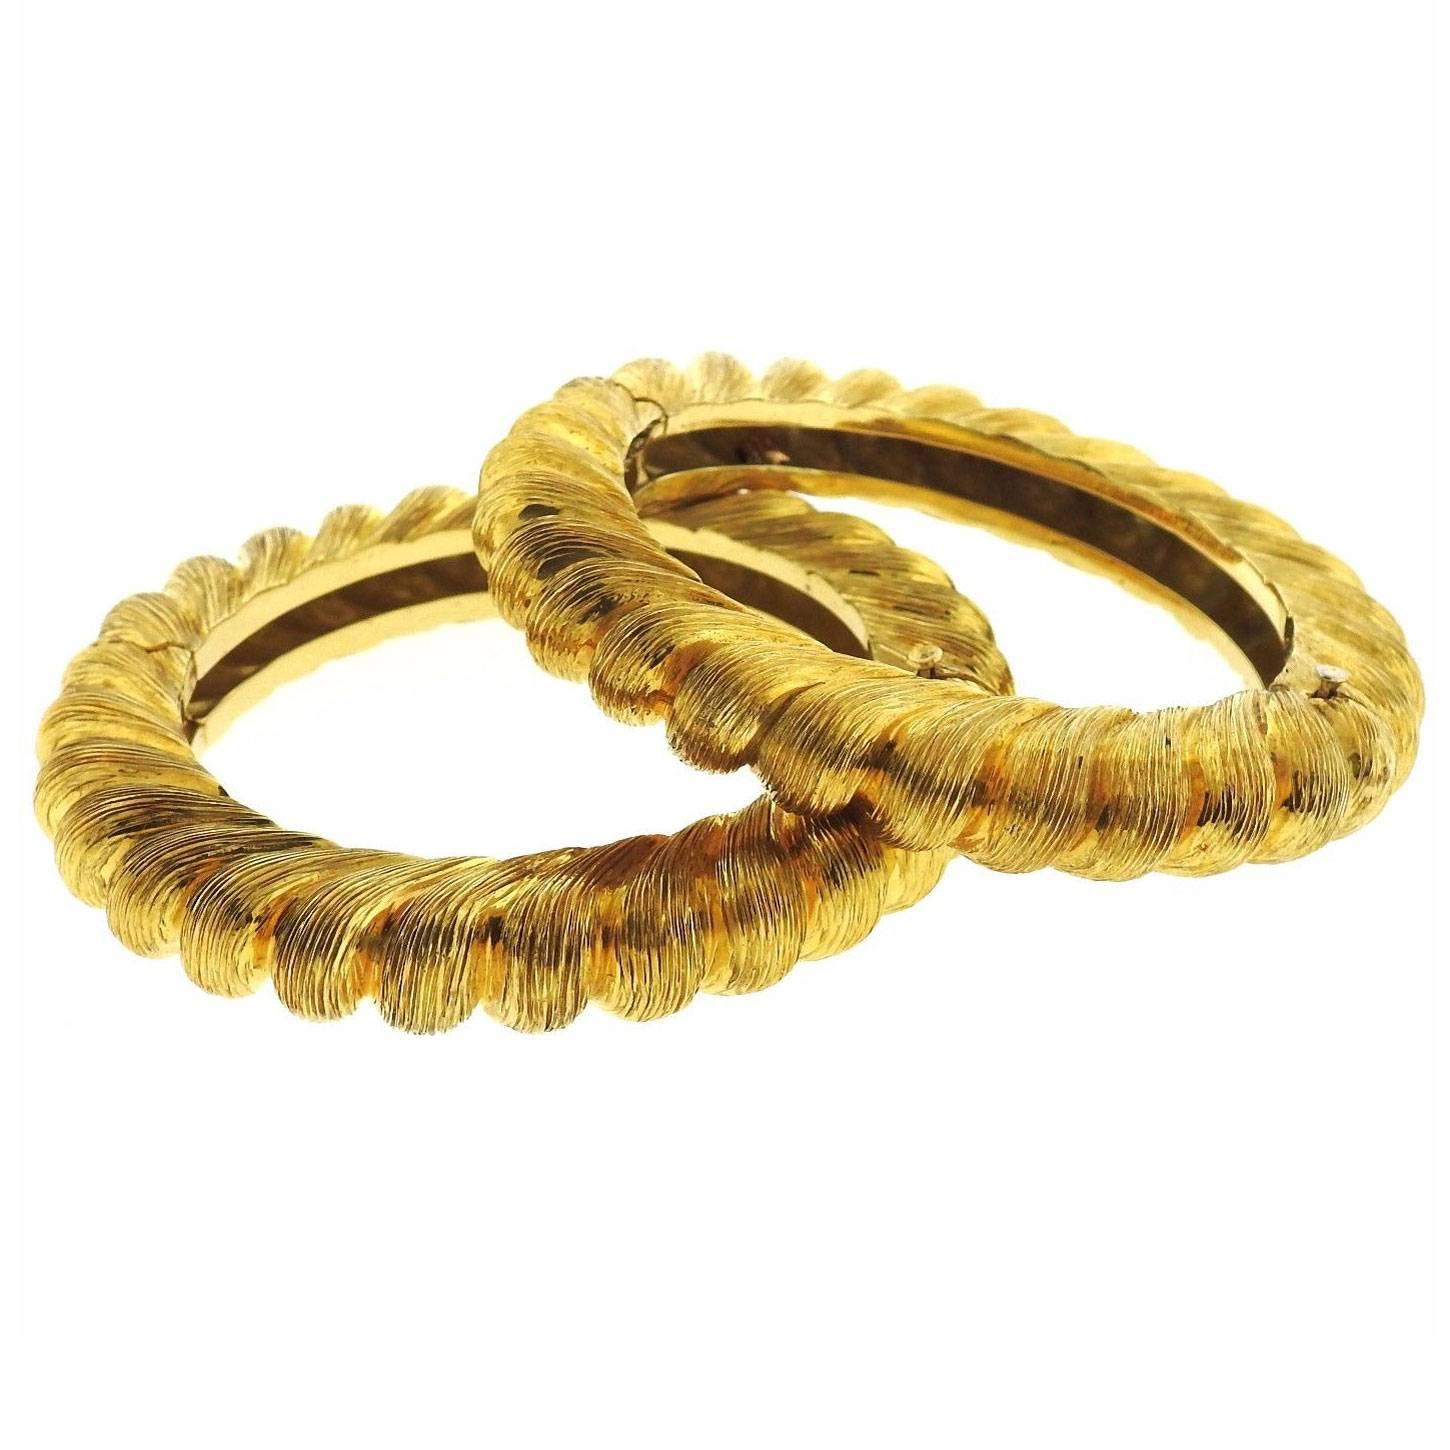 Tiffany & Co. Gold Brushed Finish Bangle Bracelet Set